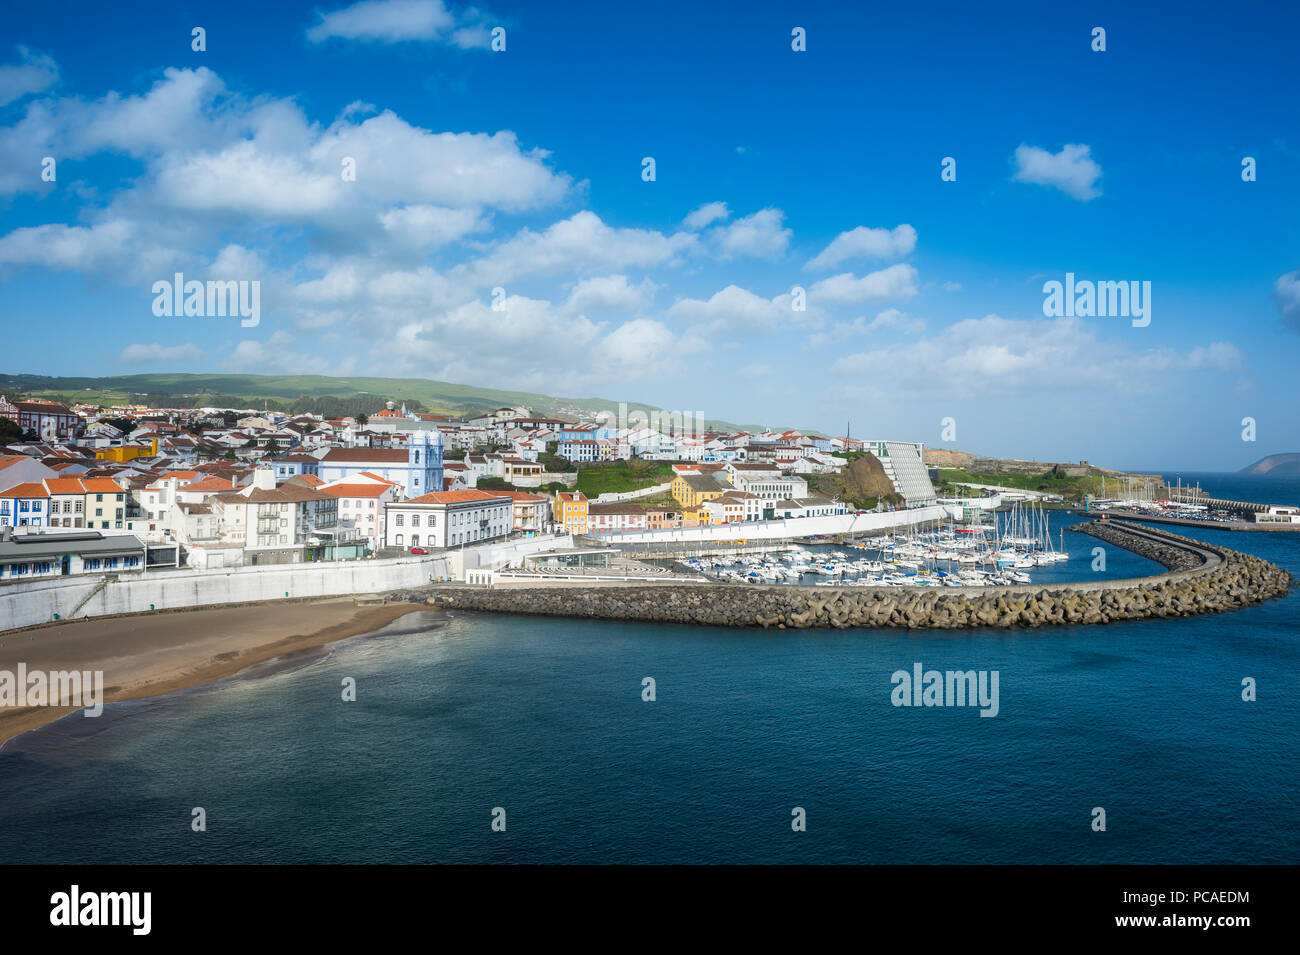 Sur la ville d'Angra do Heroismo, Site du patrimoine mondial de l'UNESCO, l'île de Terceira, Açores, Portugal, Europe, Atlantique Banque D'Images